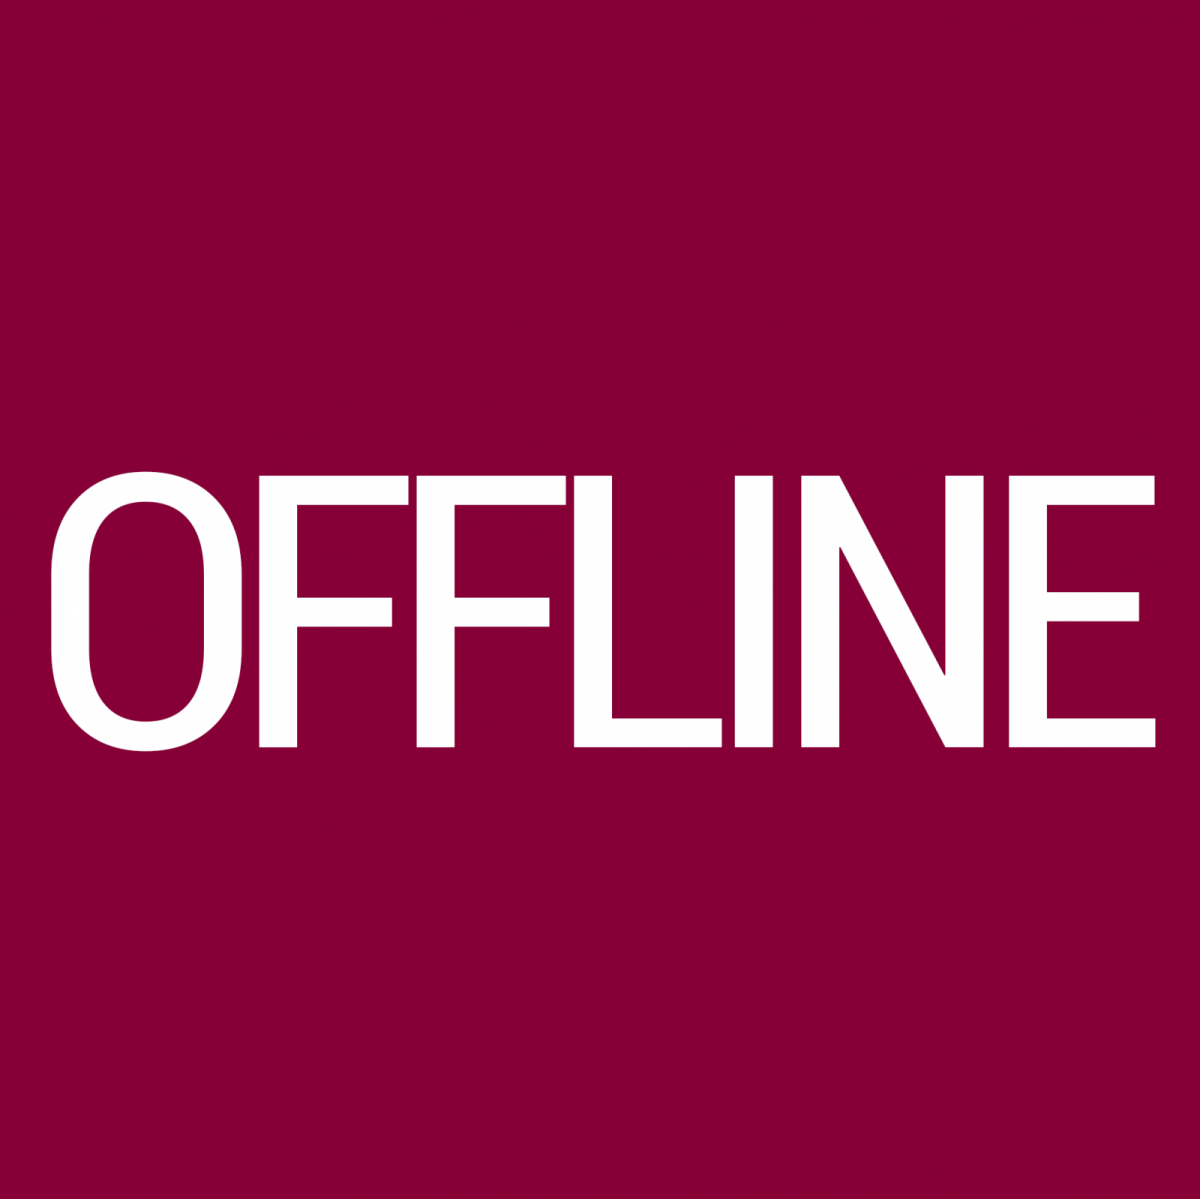 Офлайн. Логотип offline. Надпись оффлайн. Offline логотип офлайн. Offline login